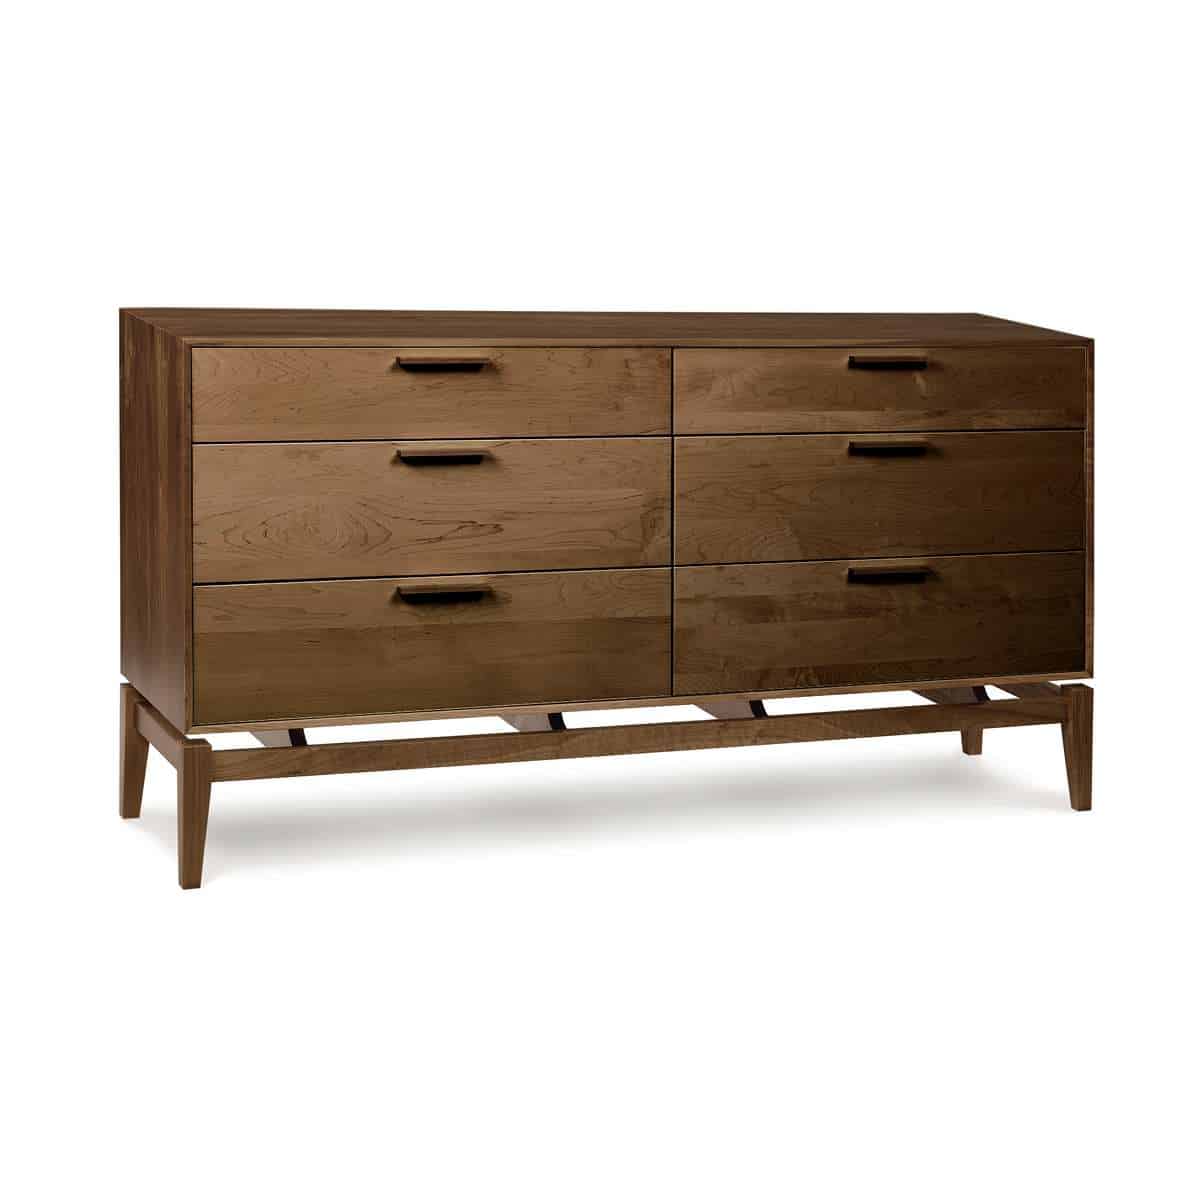 Copeland Furniture Dressers